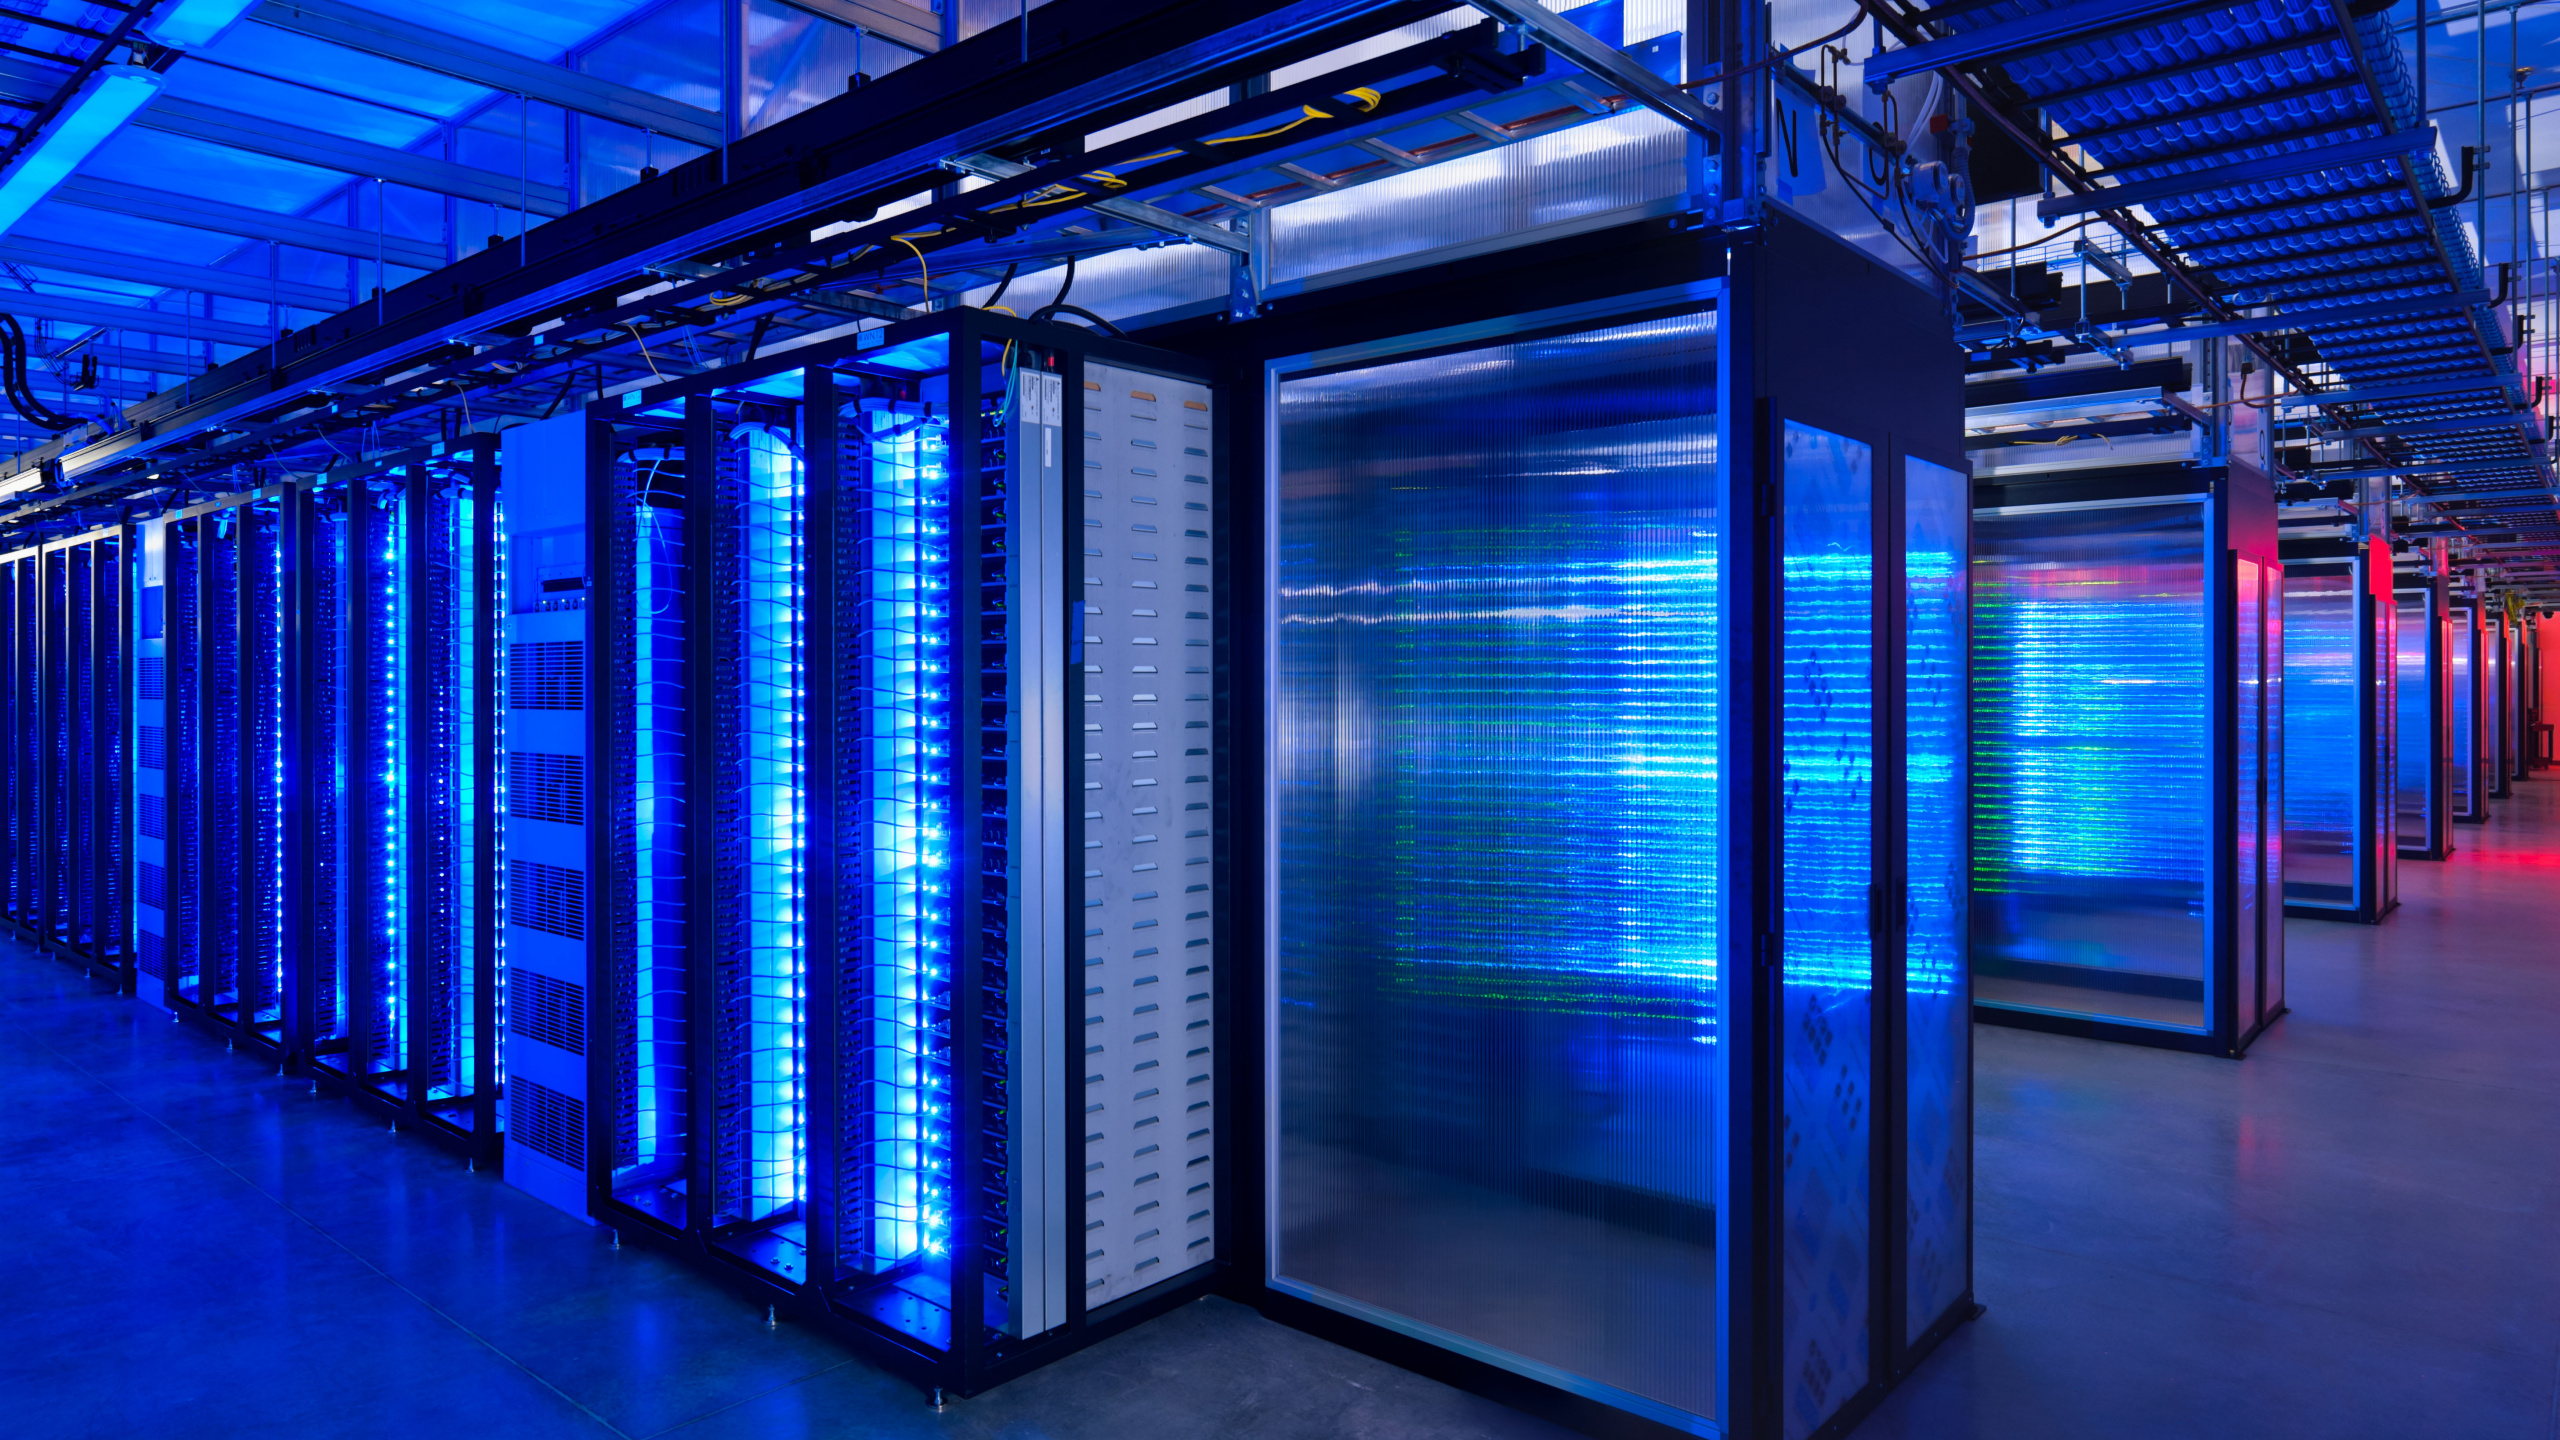 云计算, 数据中心, 光, 电蓝色的, 结构 壁纸 2560x1440 允许